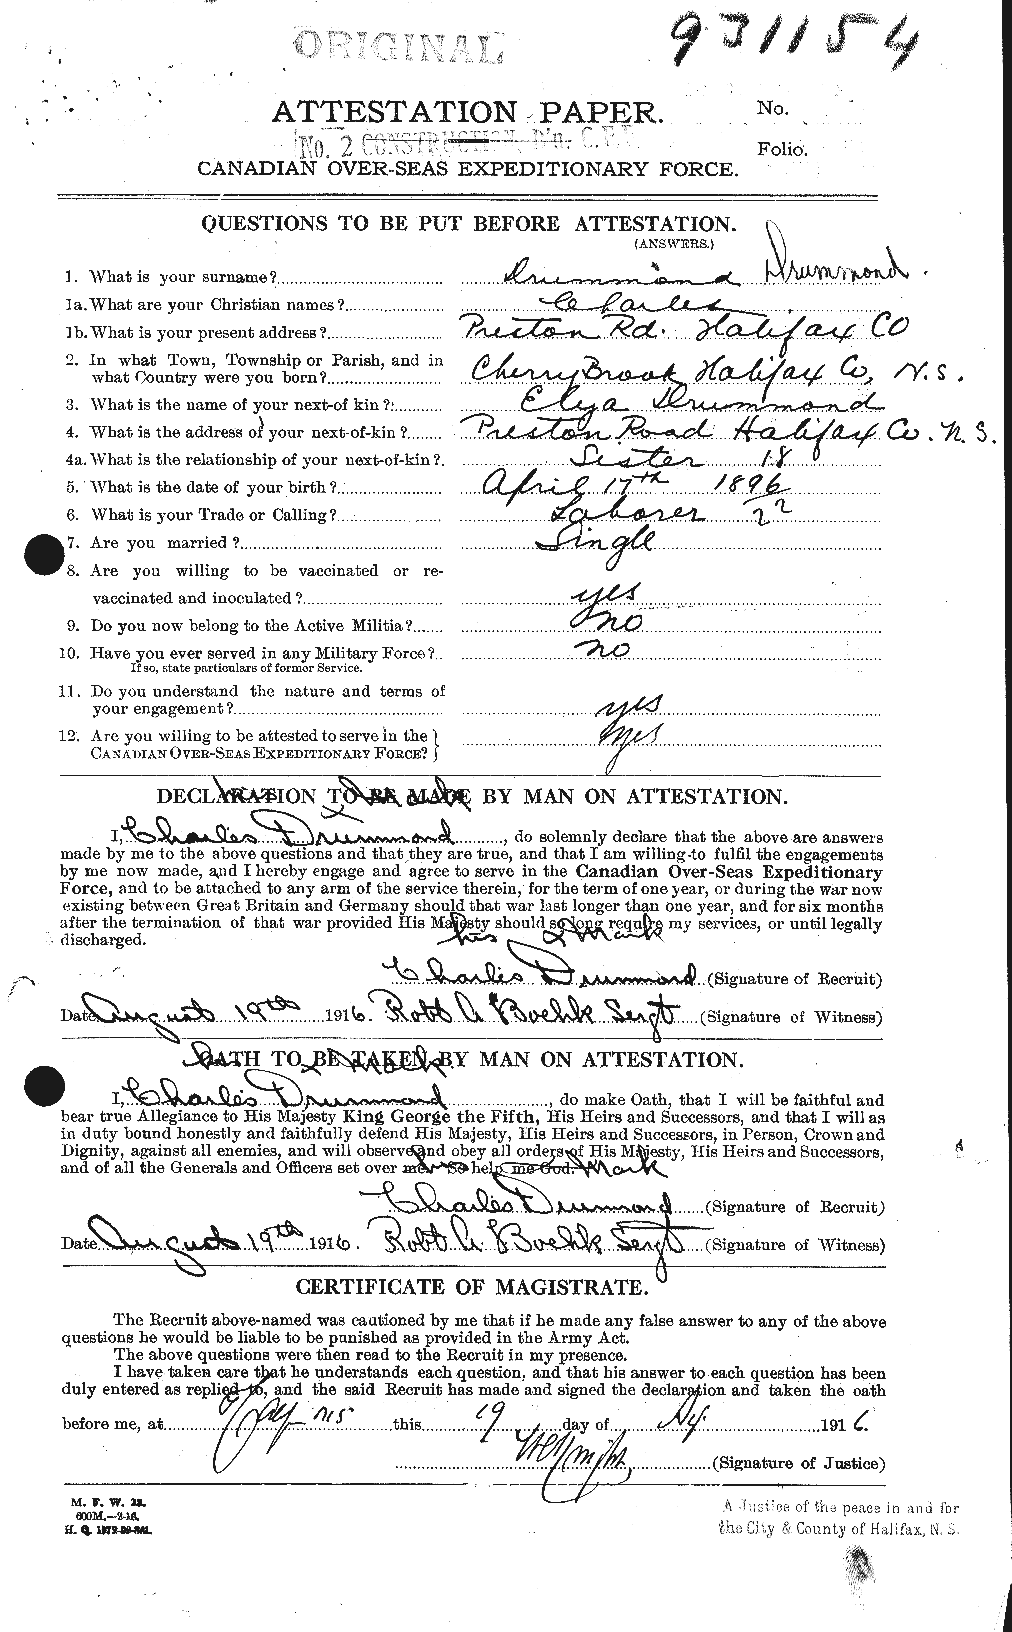 Dossiers du Personnel de la Première Guerre mondiale - CEC 300850a